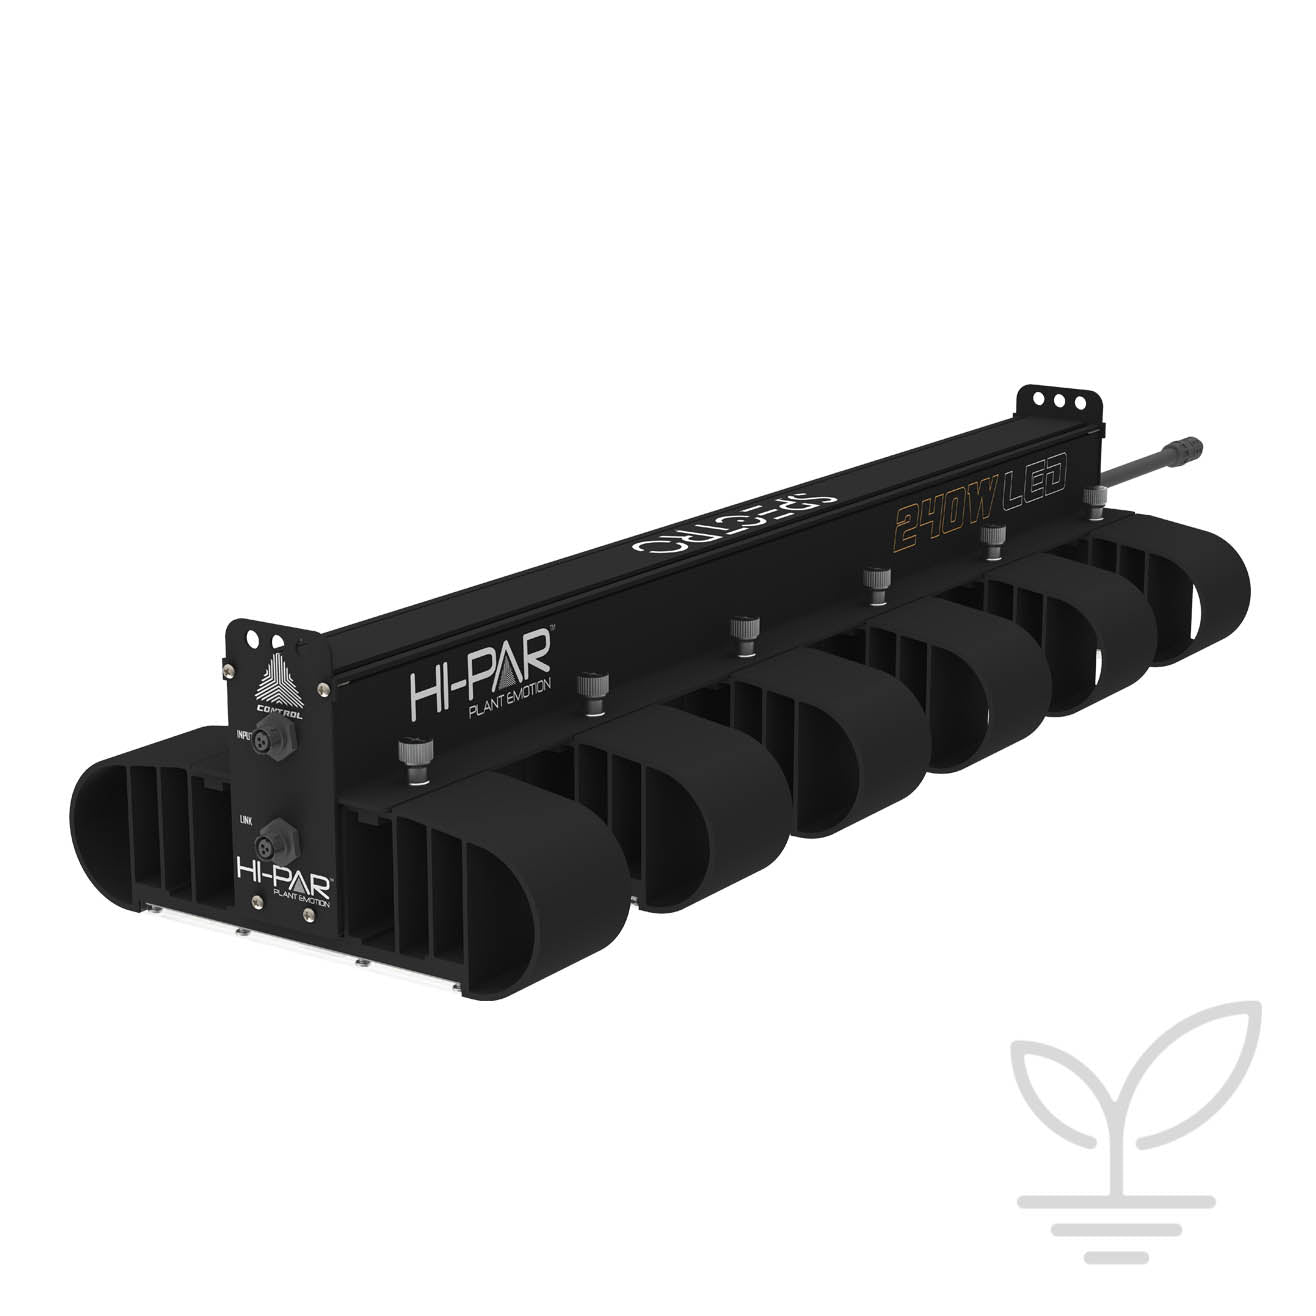 HI-PAR SPECTRO 240w LED